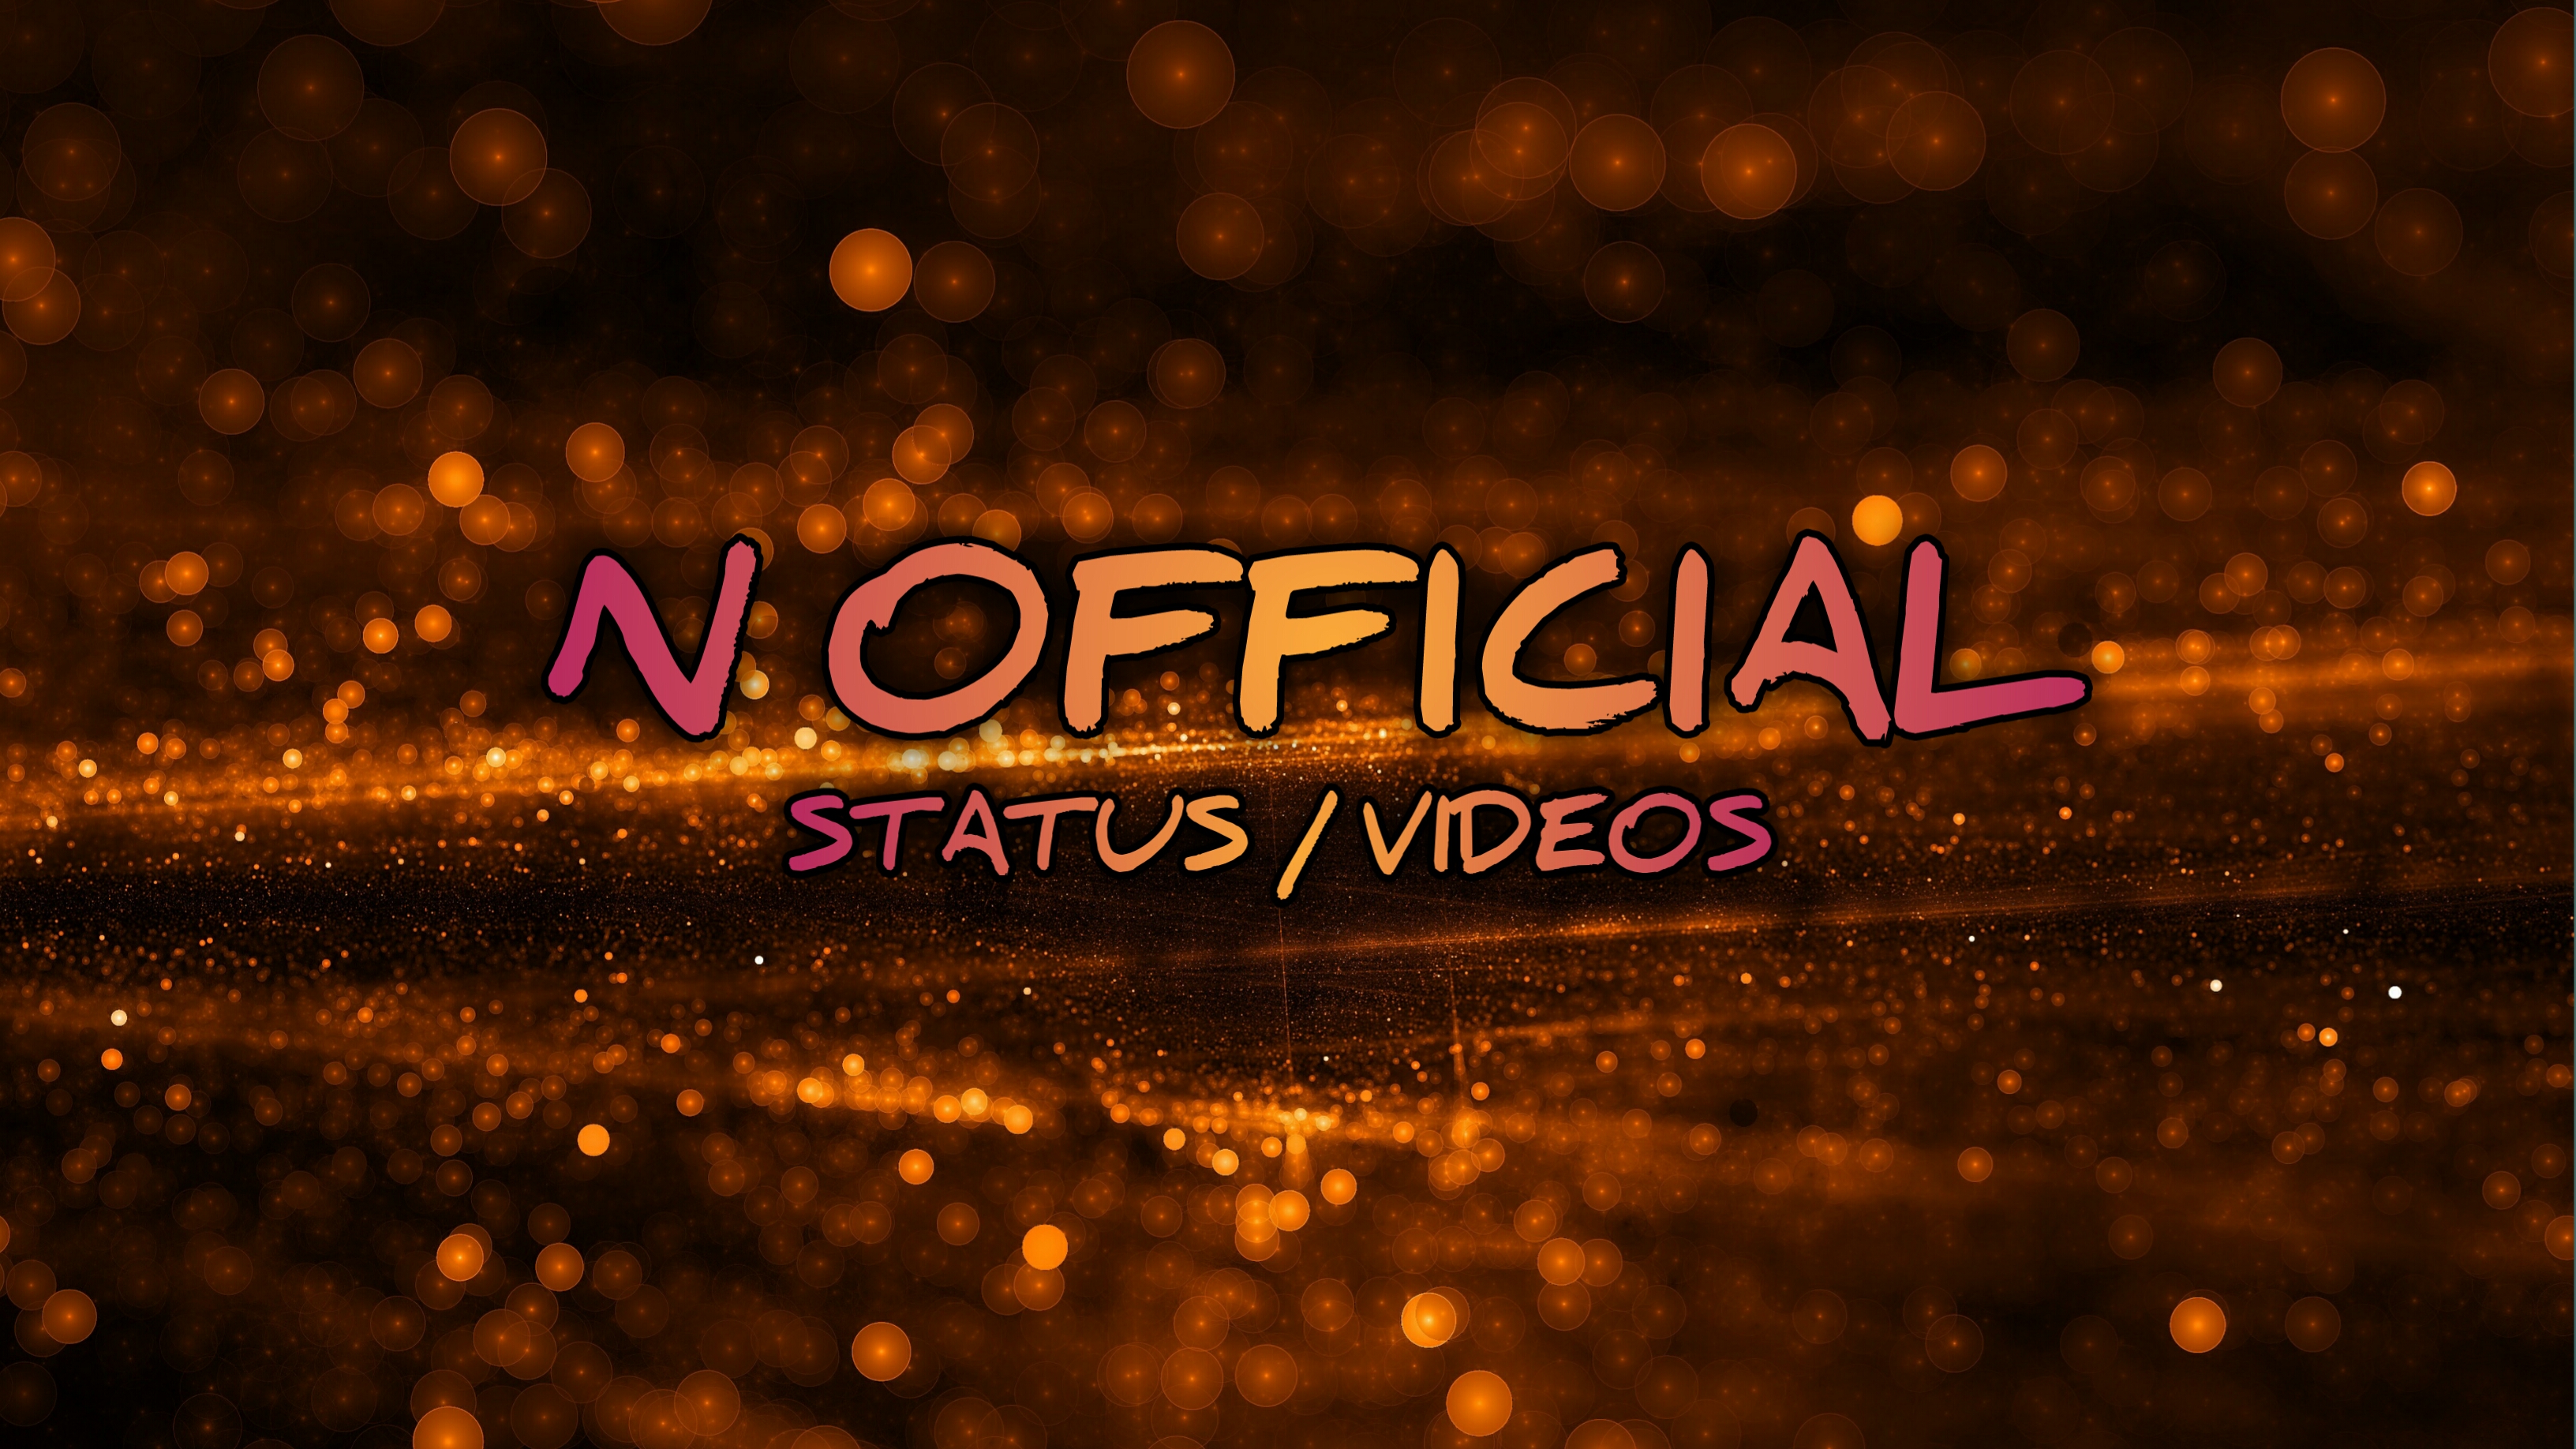 N official status videos